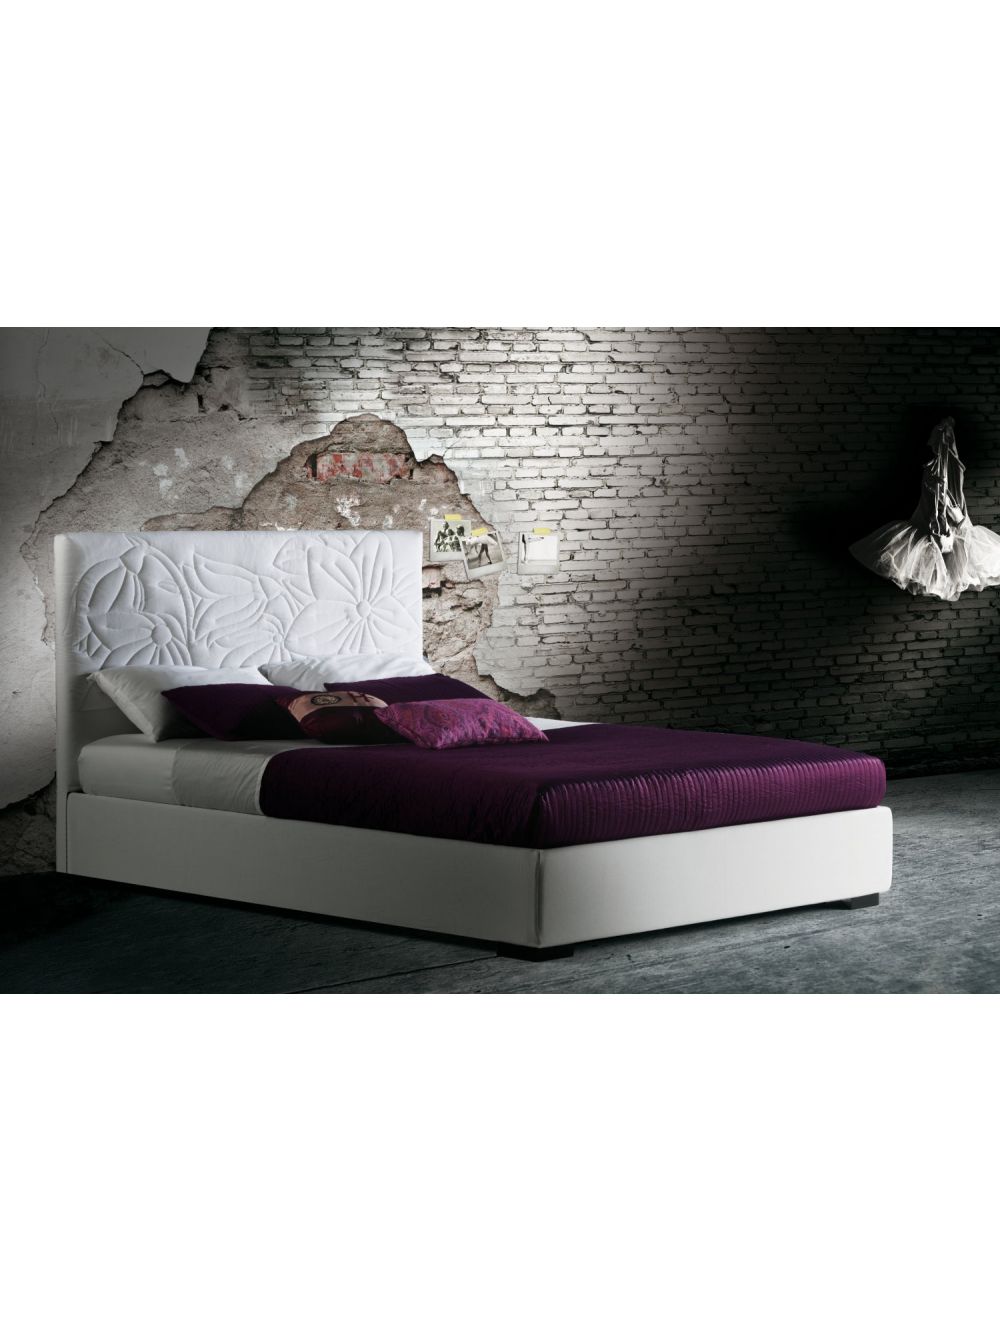 Cama Mauritius - Bed - Milano Bedding Compra Online ®